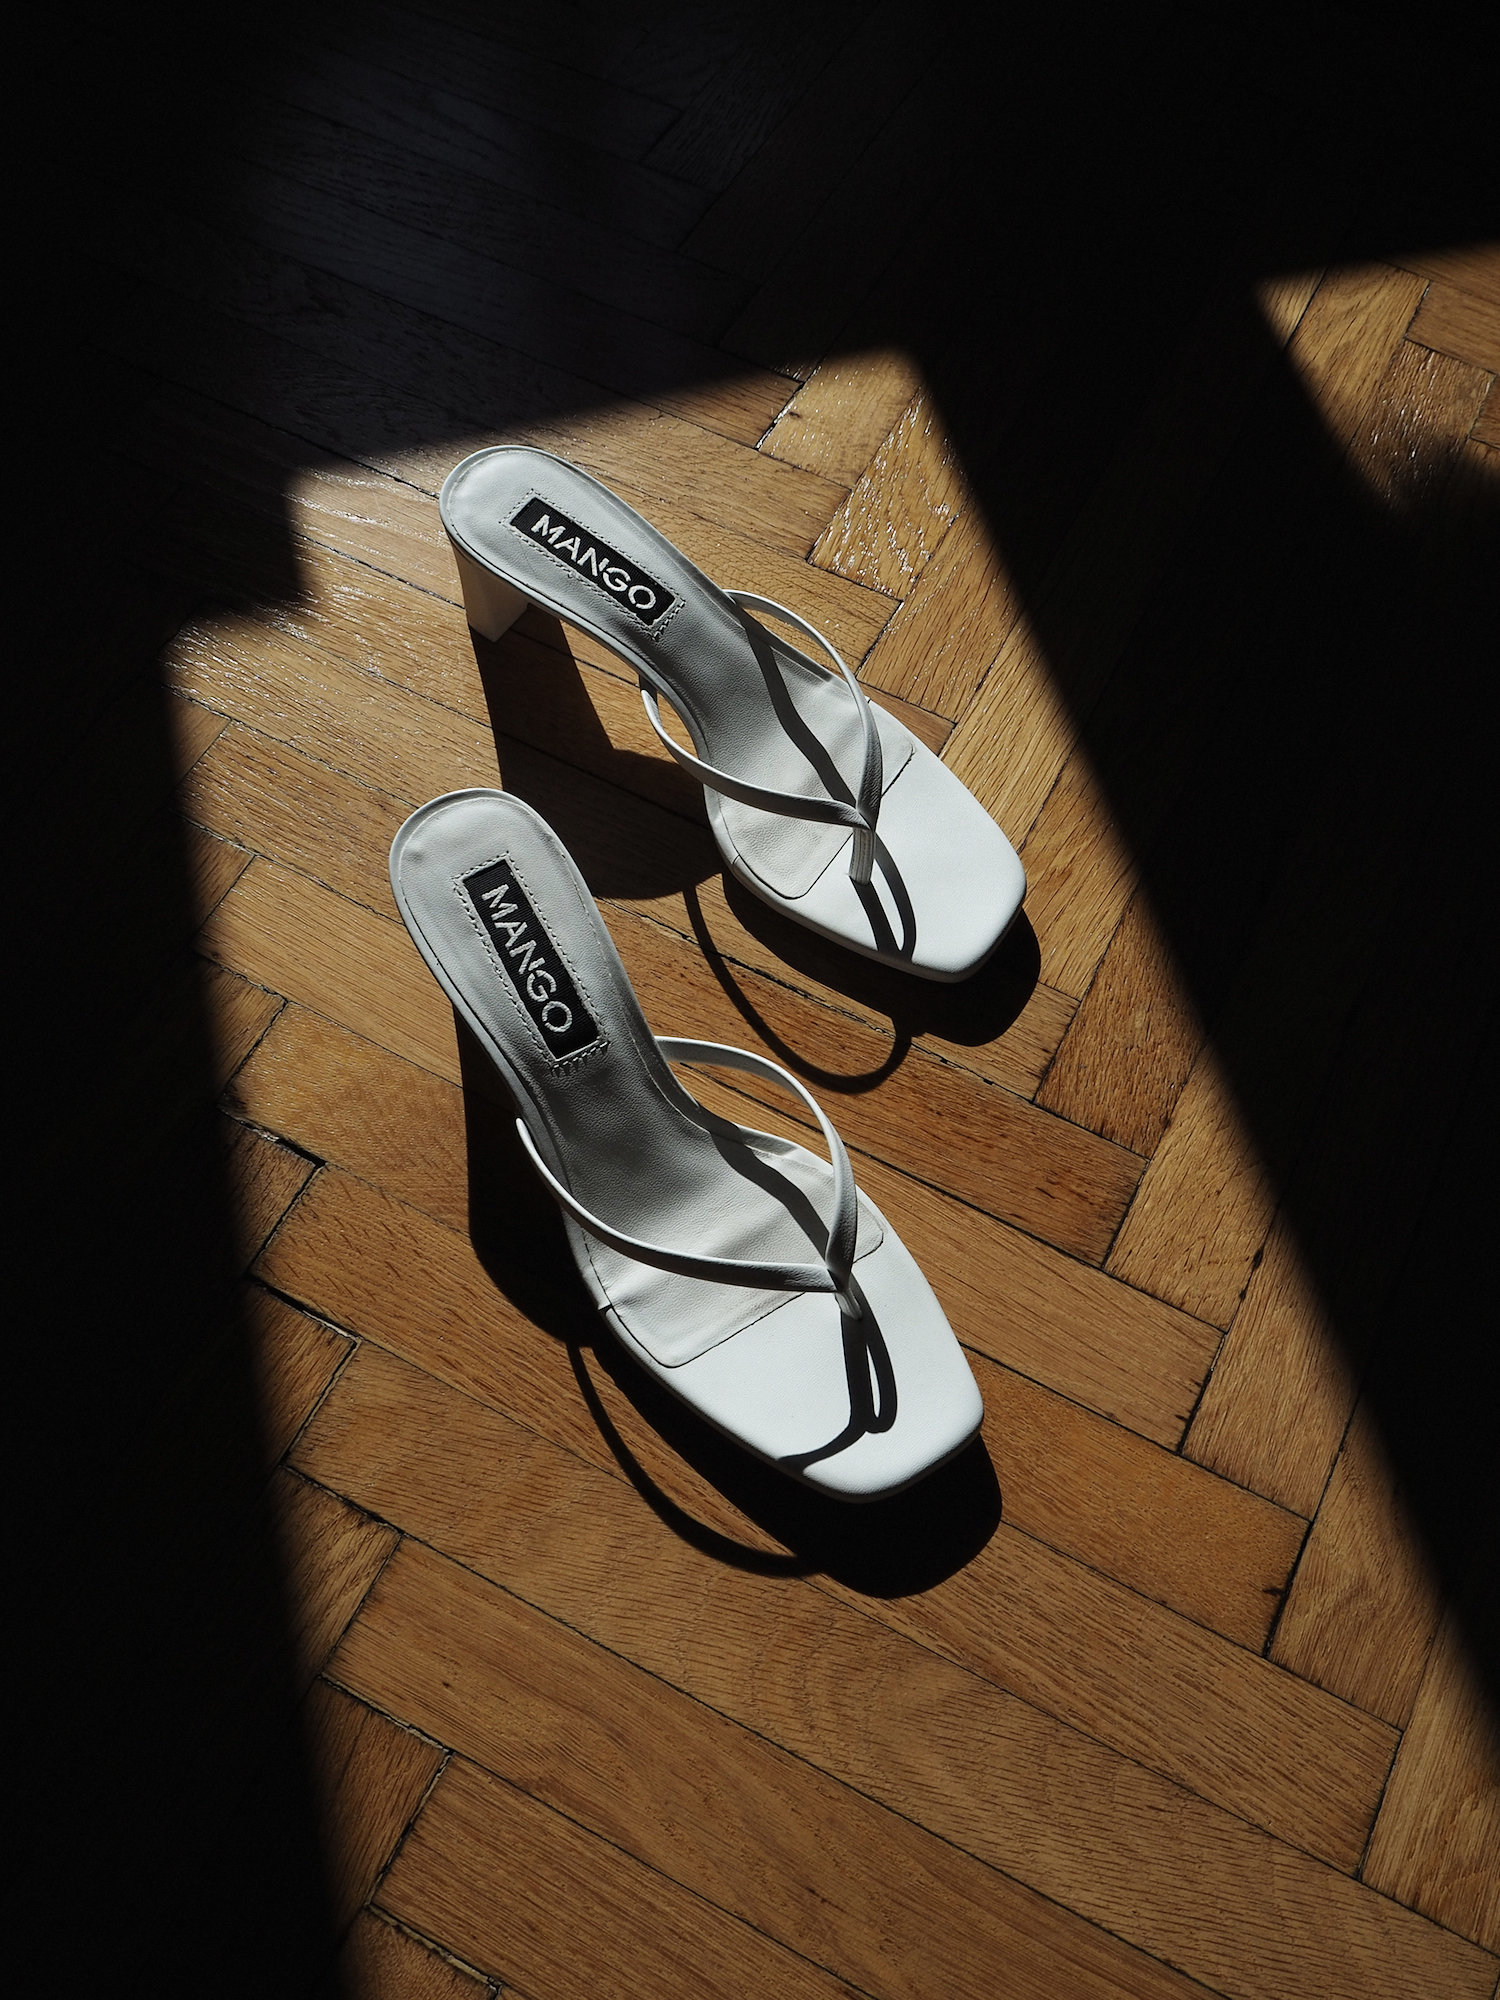 Summer Shoe 2019: The Flip Flop Heels I More up on viennawedekind.com